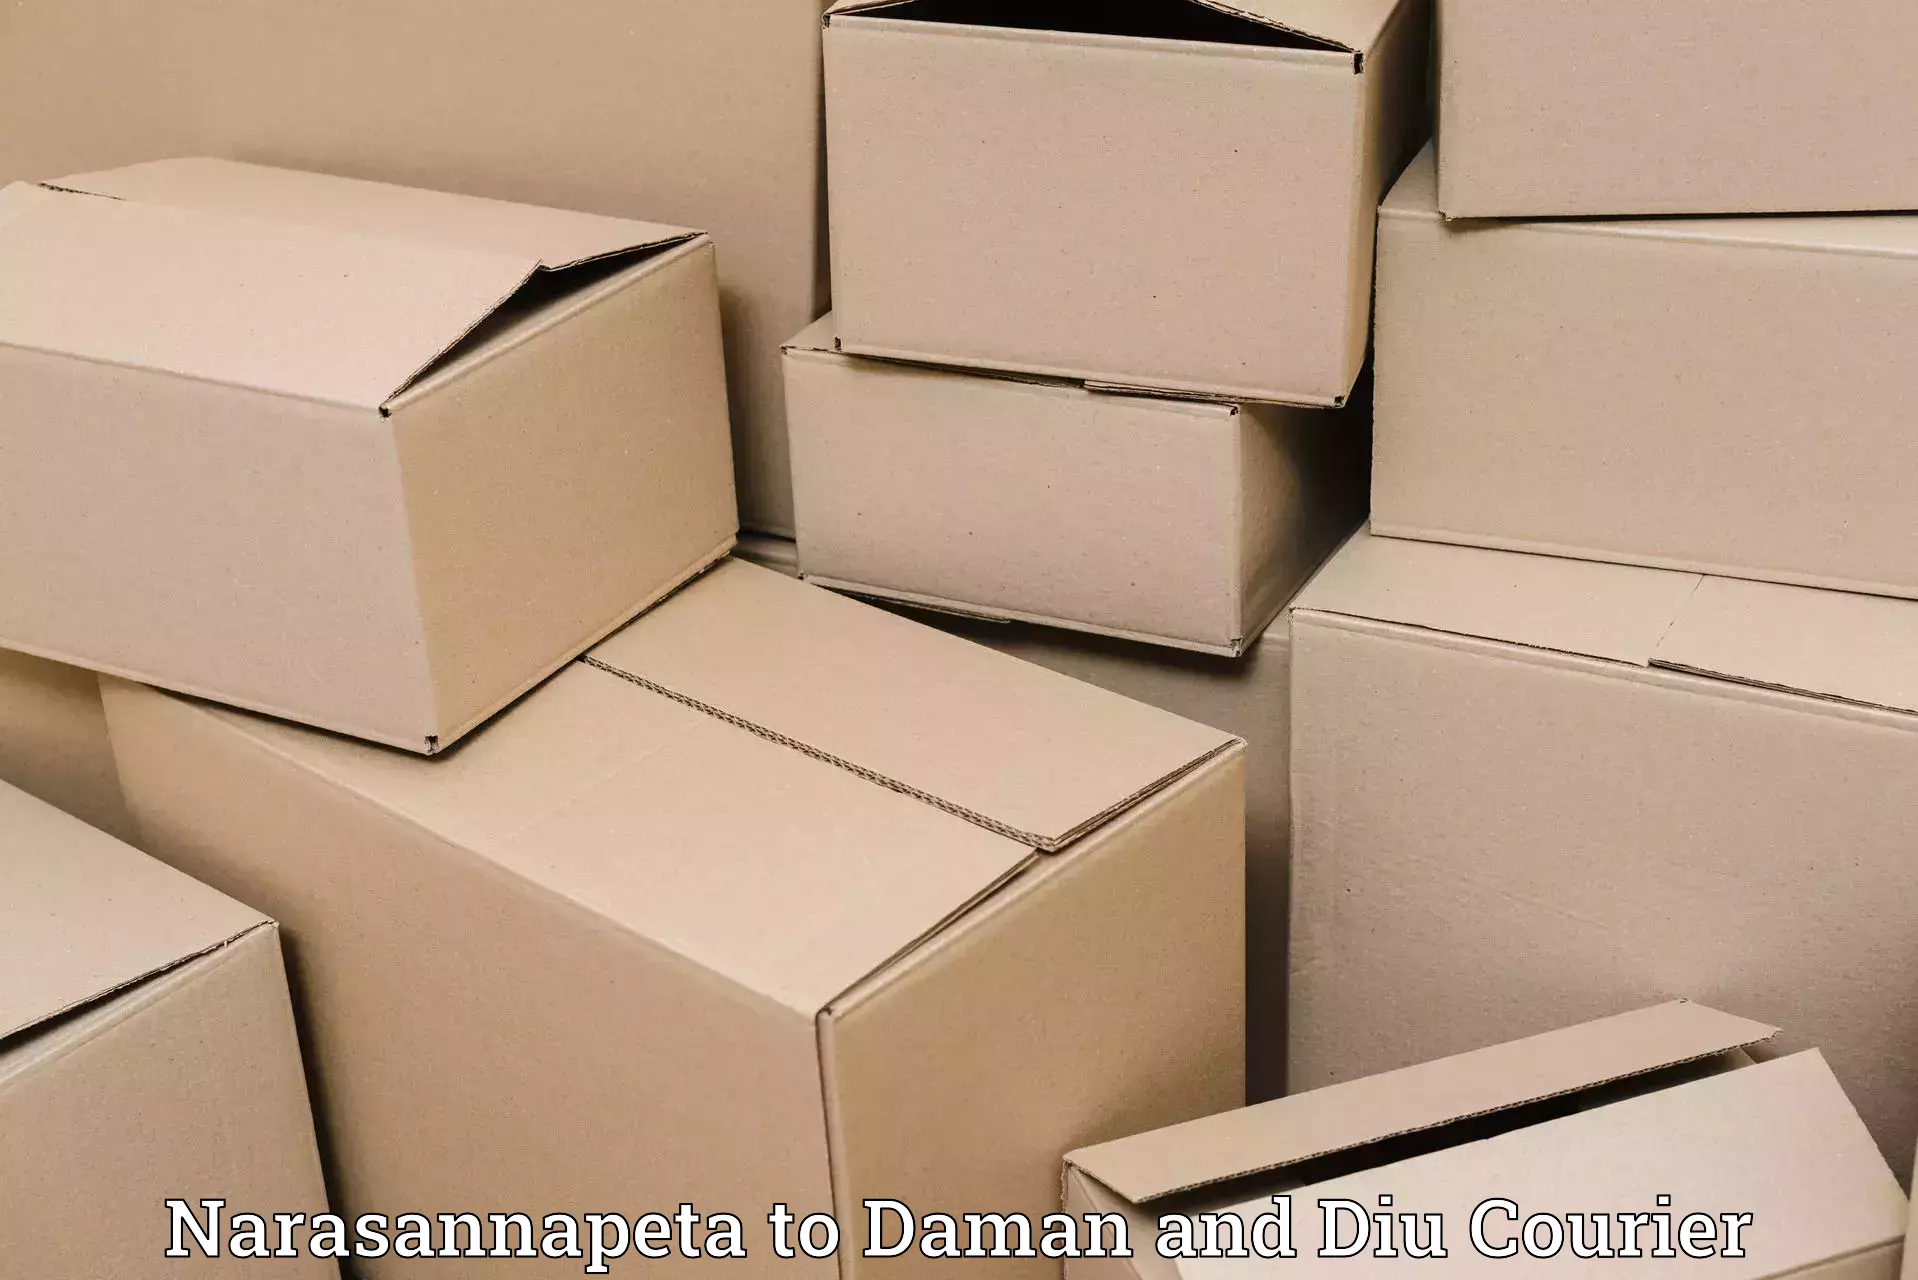 Efficient shipping platforms Narasannapeta to Daman and Diu